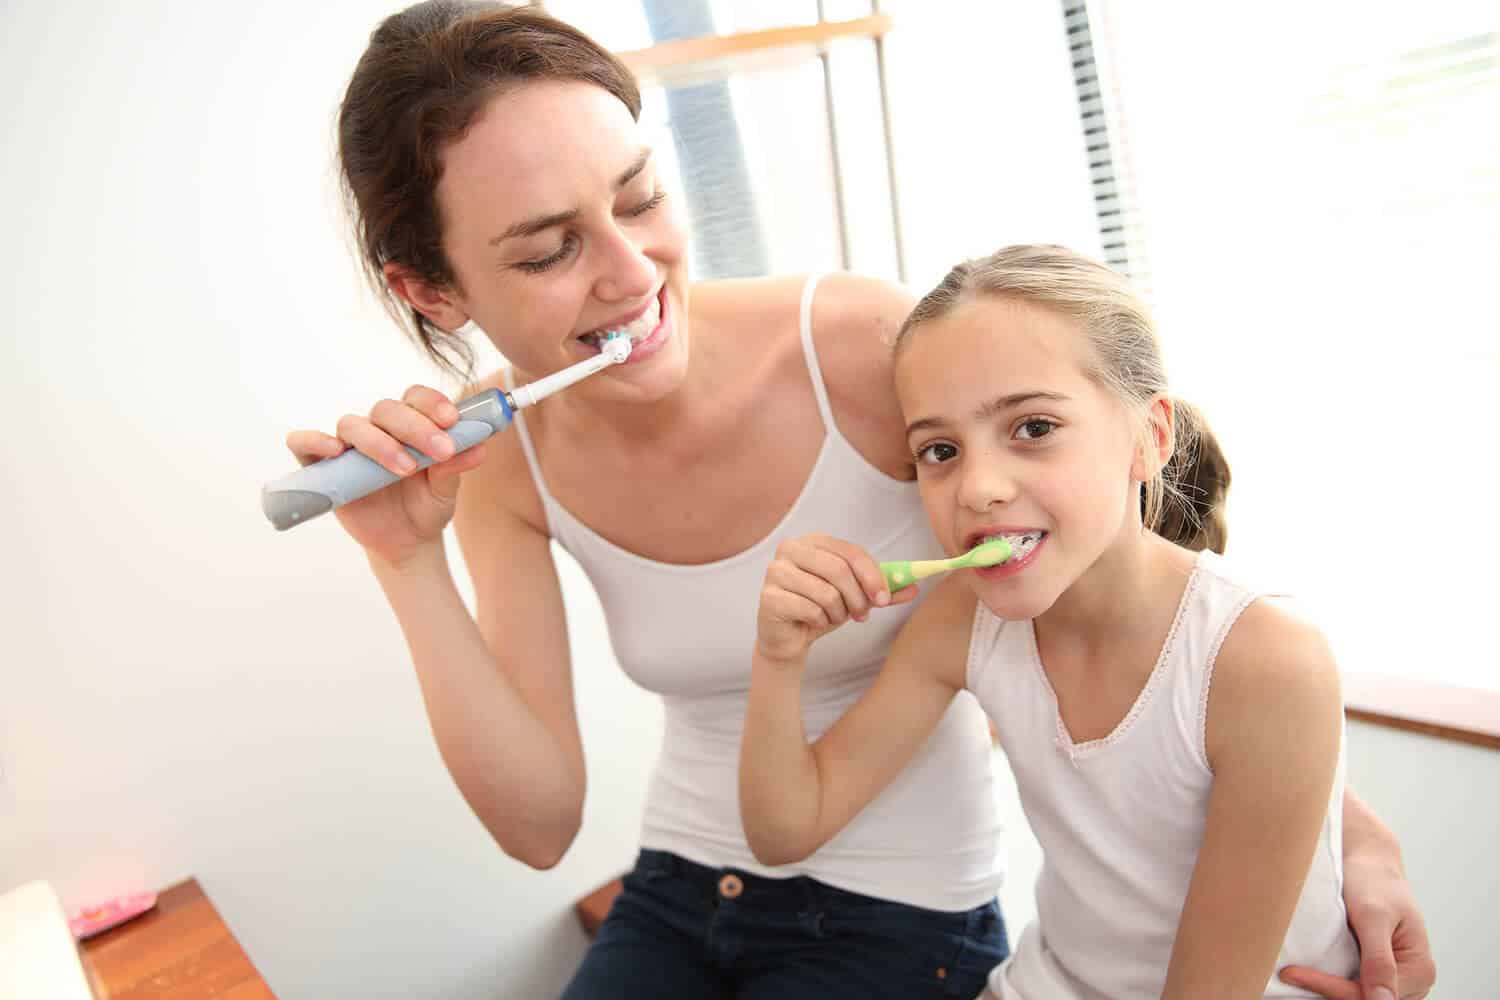 Đánh răng sau khi ăn là sai lầm trong cách ăn sáng